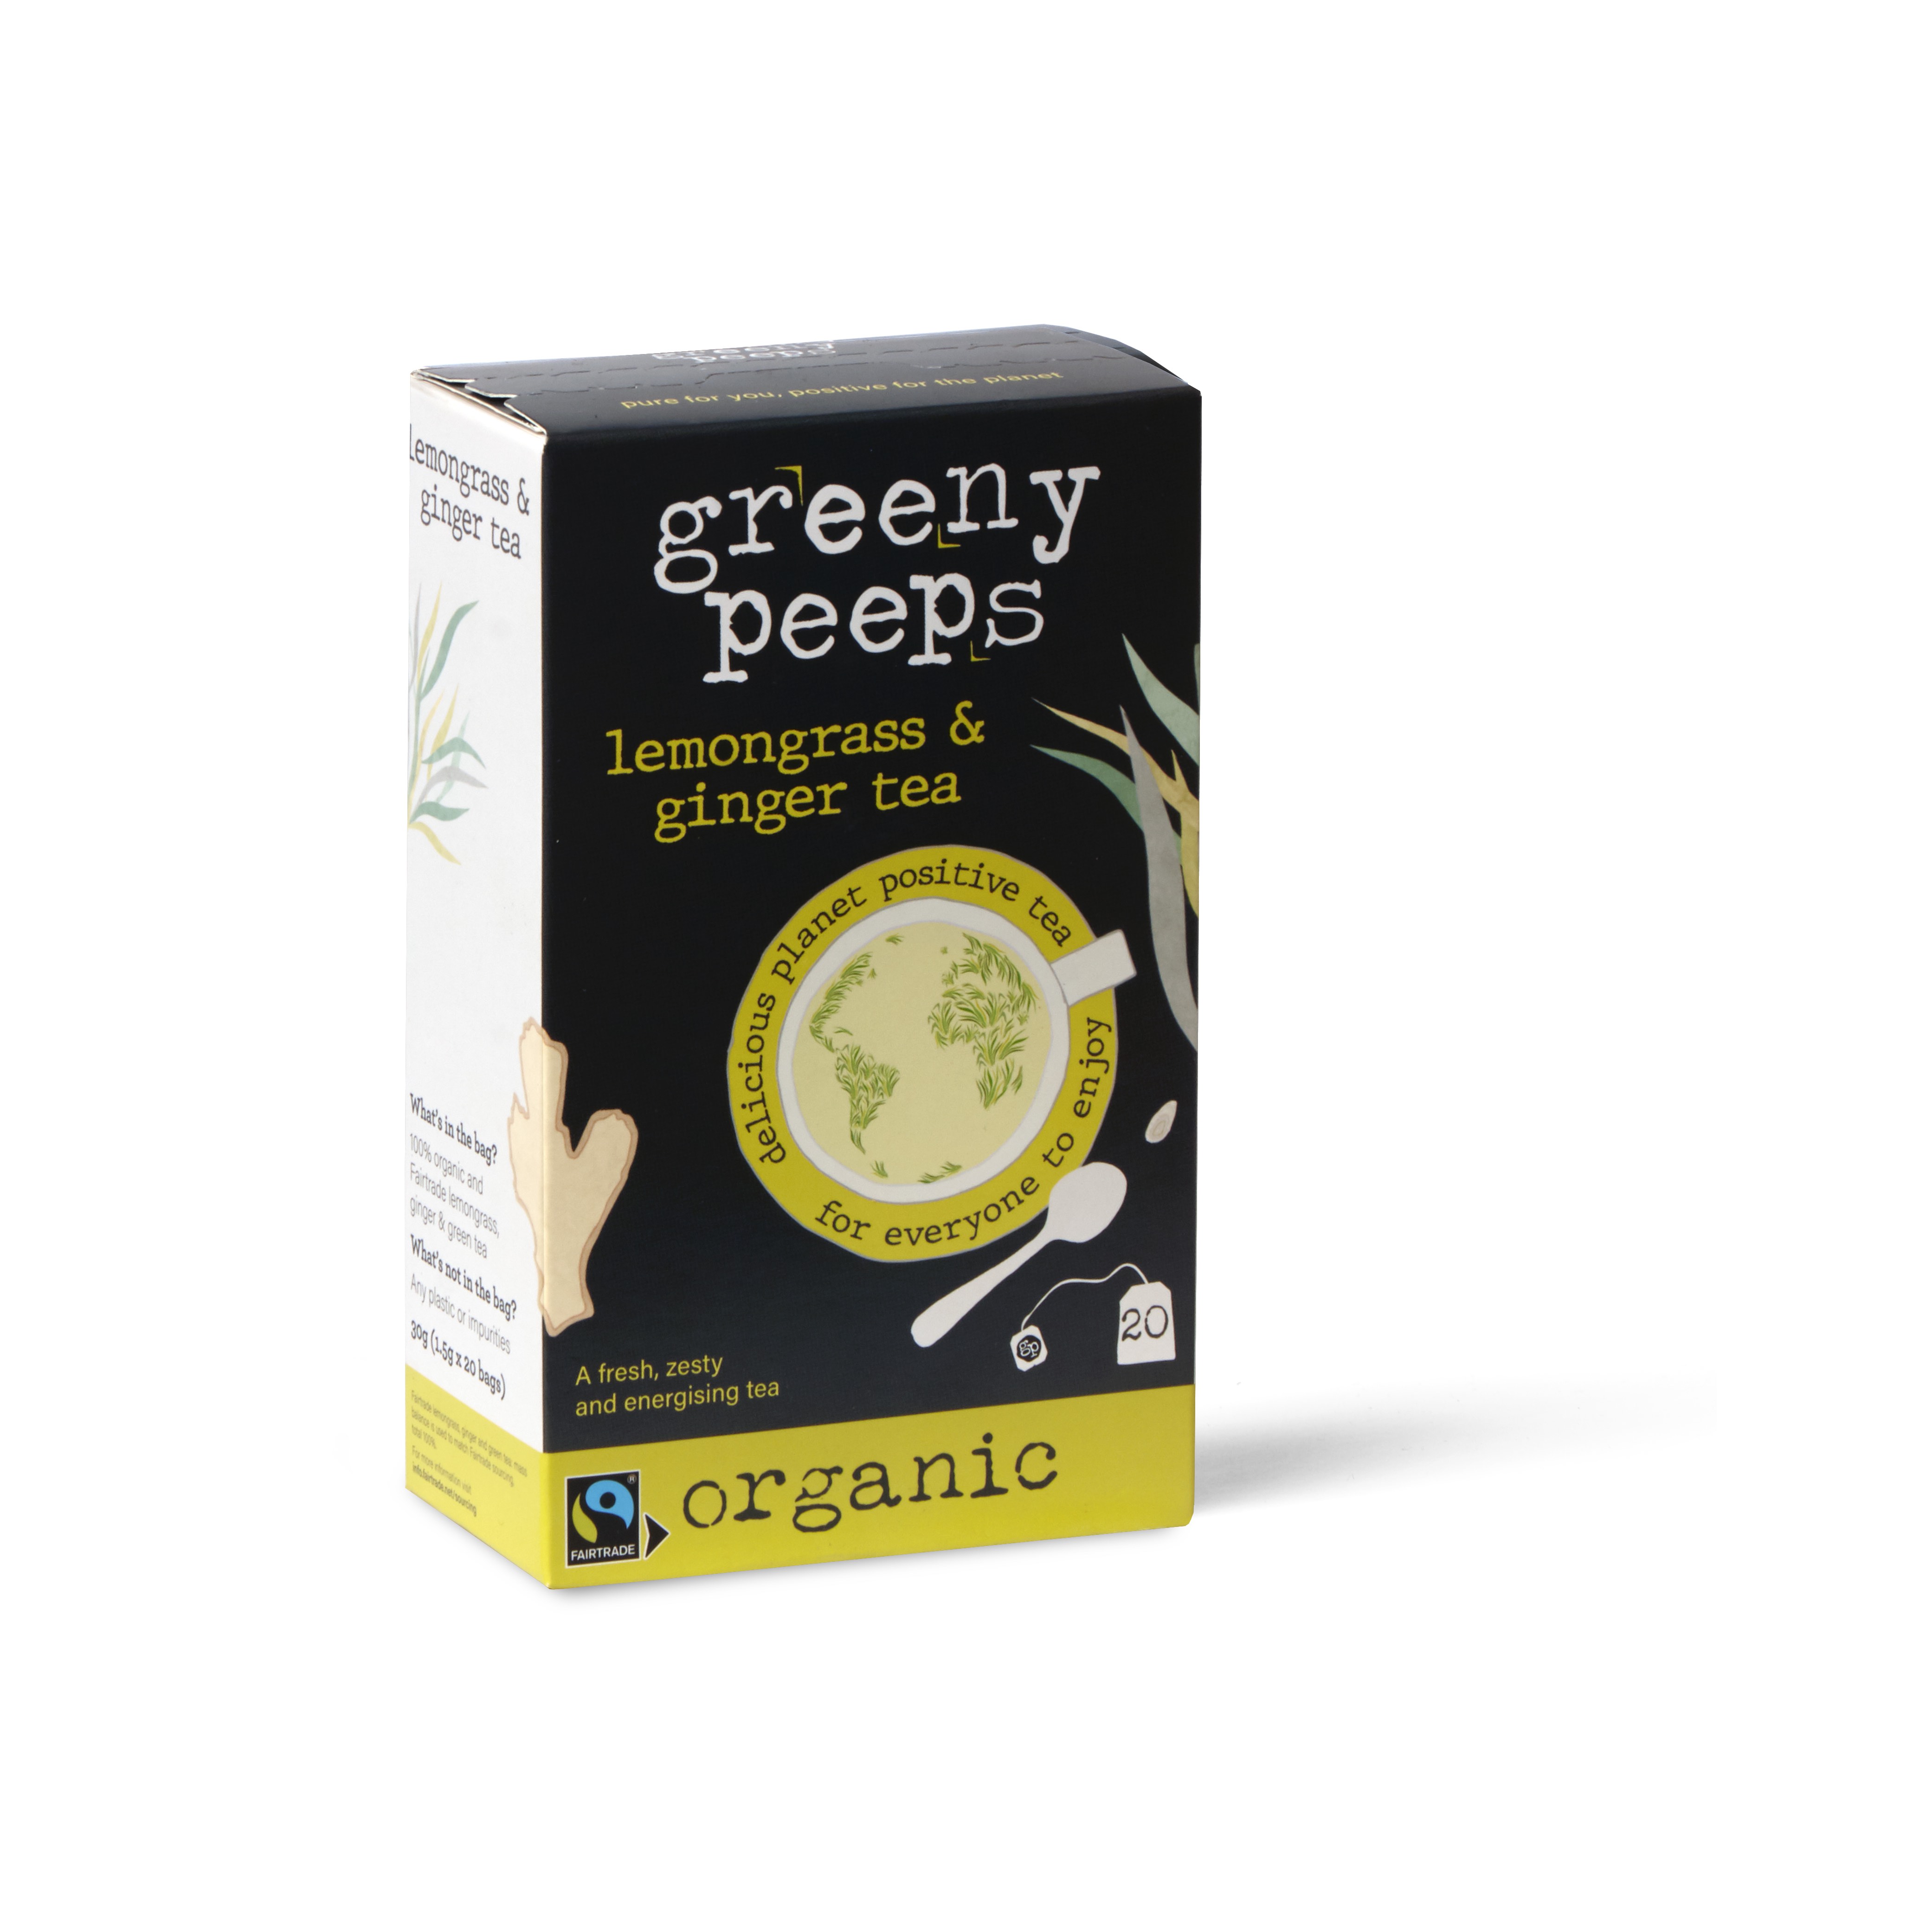 Greenypeeps Lemongrass & Ginger tea